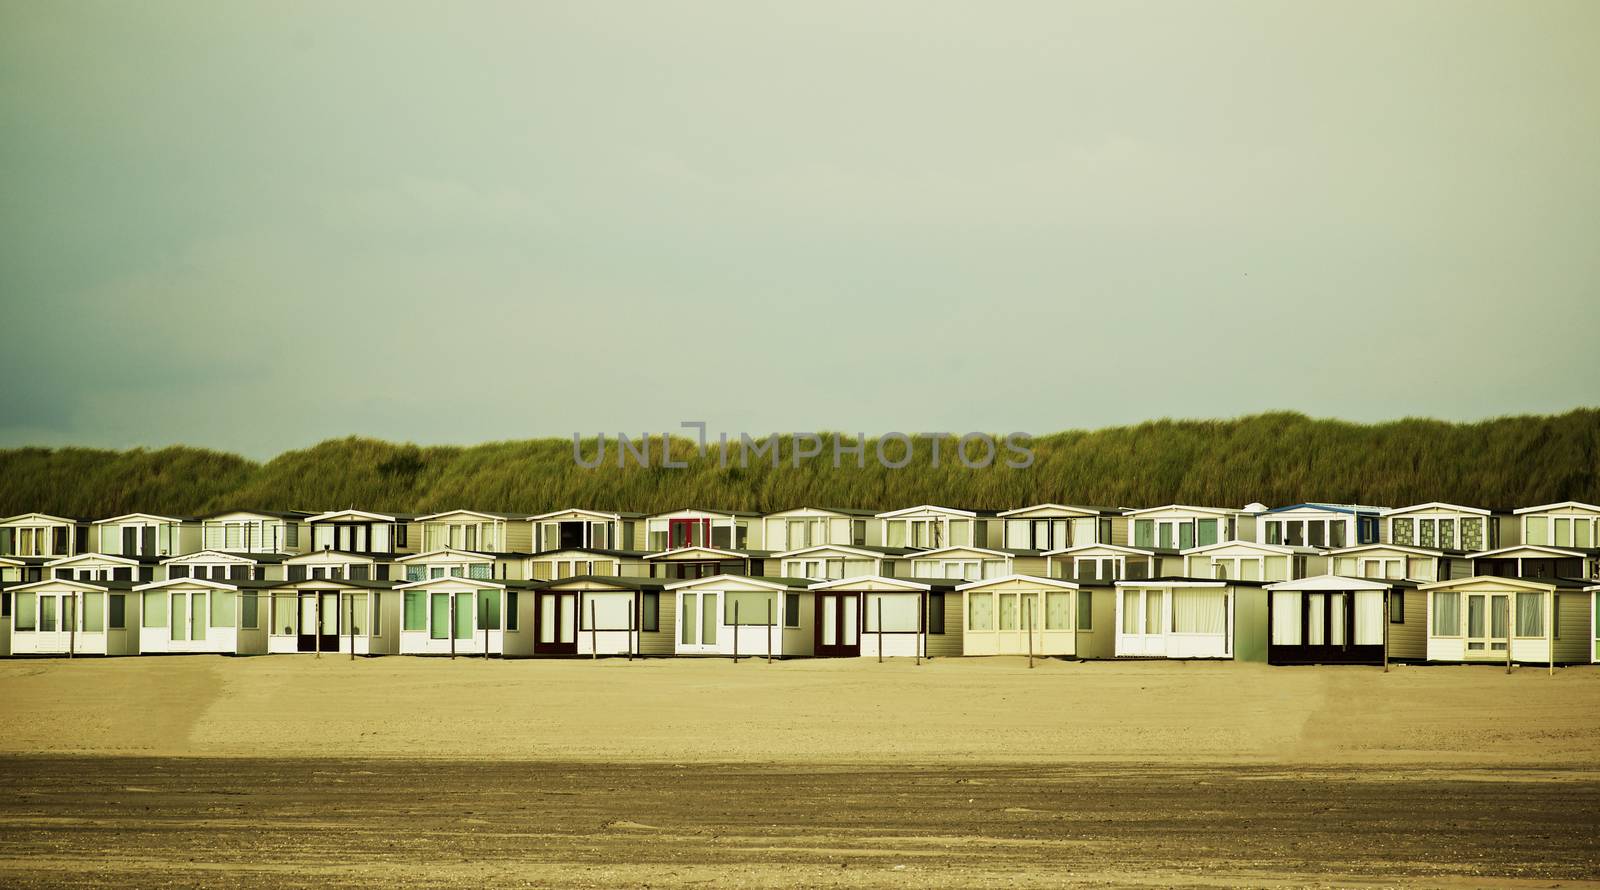 Beach Houses on Beach by zhekos